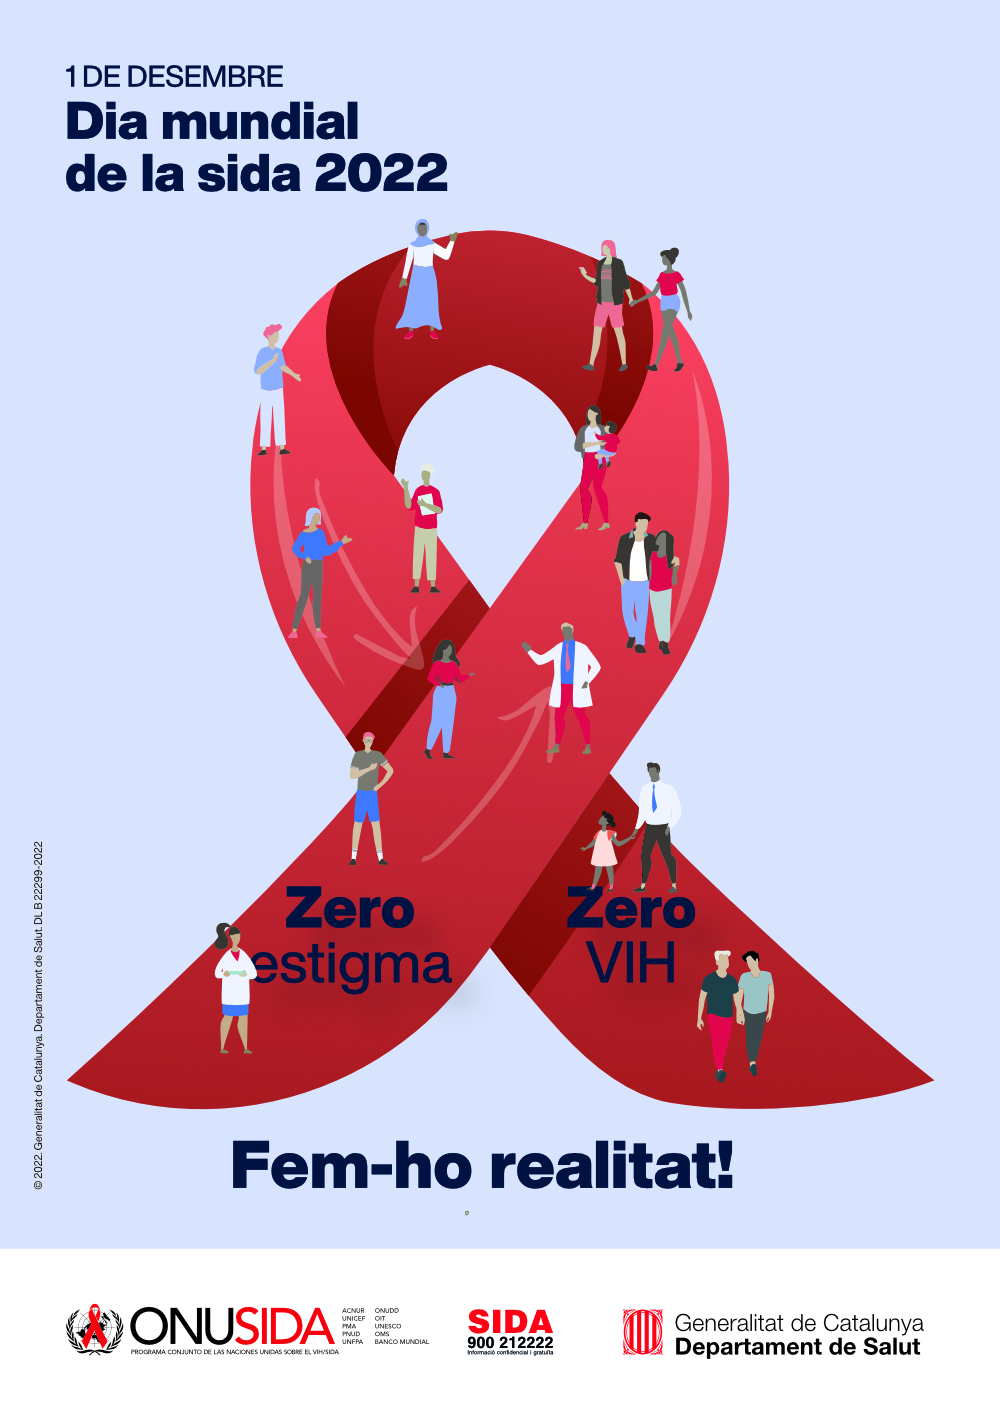 Dia Mundial de la Sida 2022. Zero estigma, zero VIH